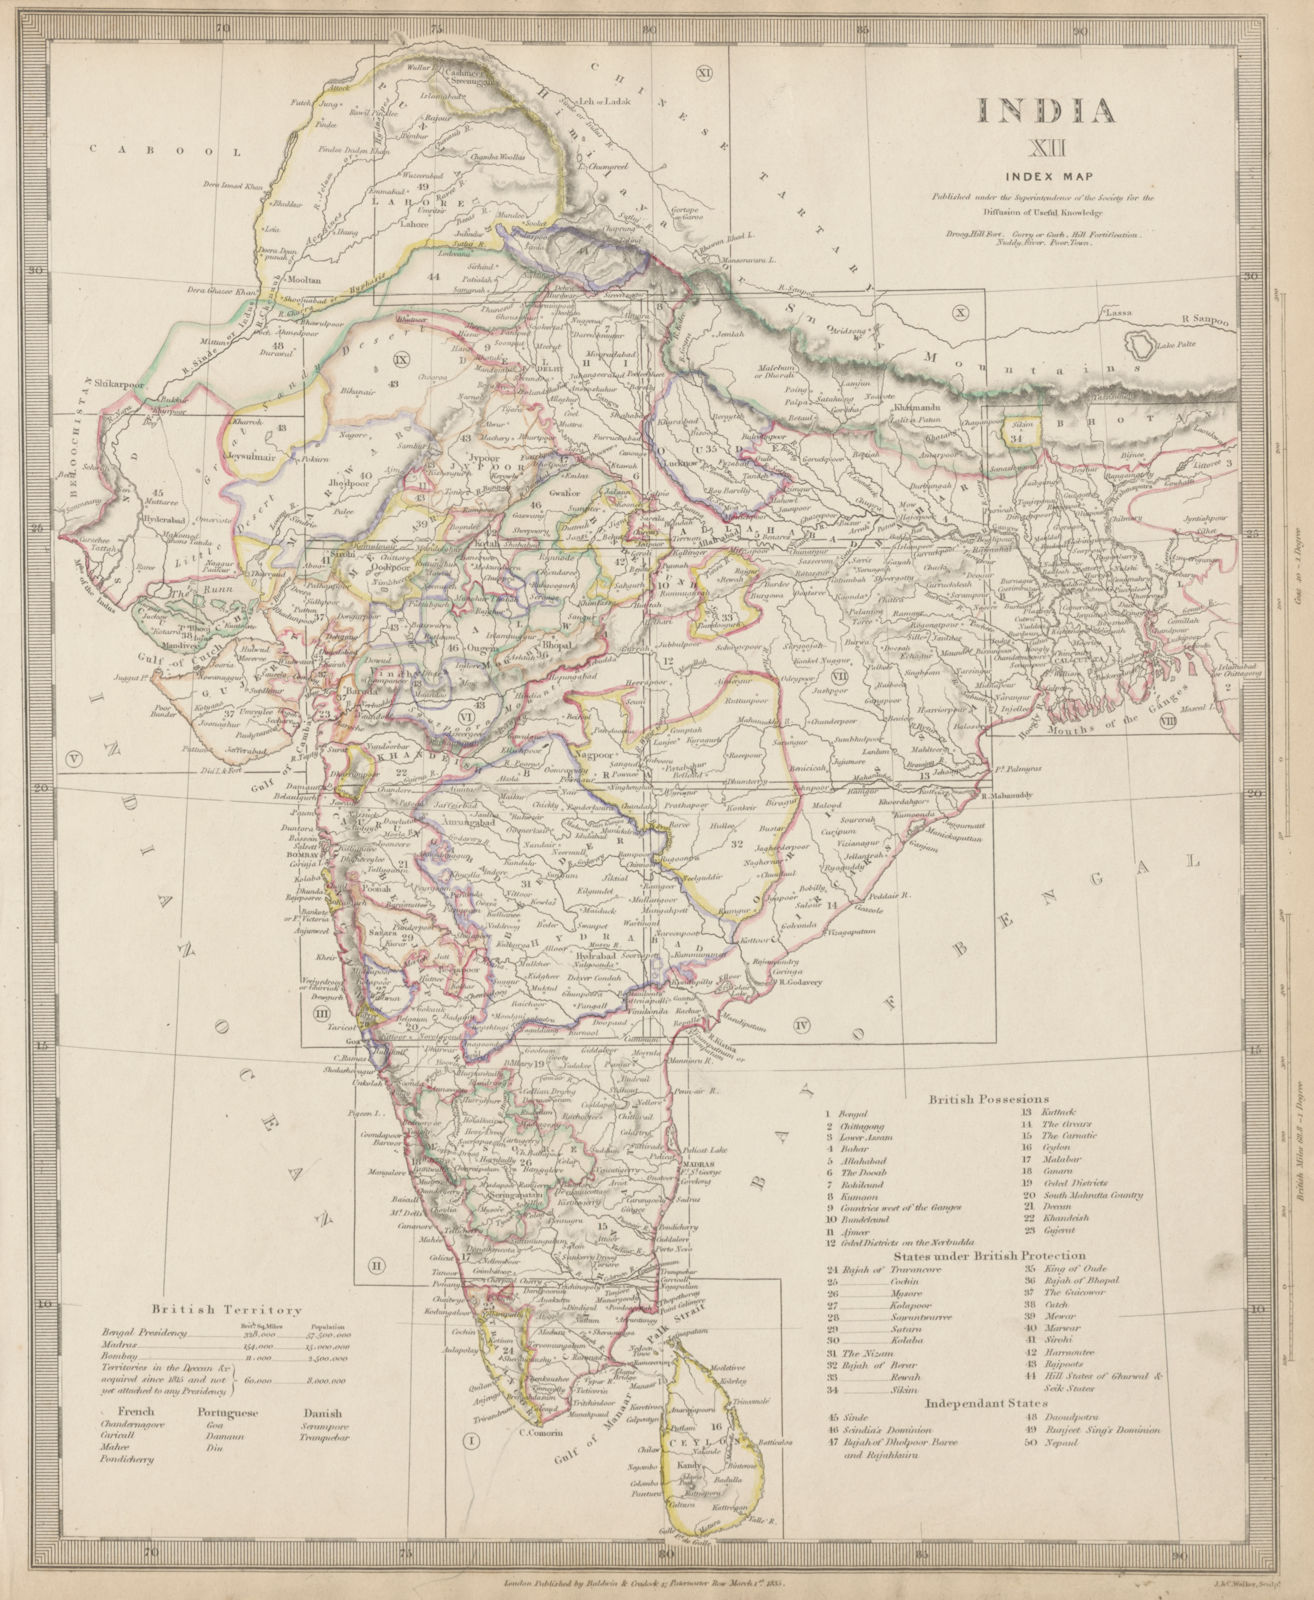 INDIA Index Map. Lists British French Portuguese Danish states. SDUK 1844